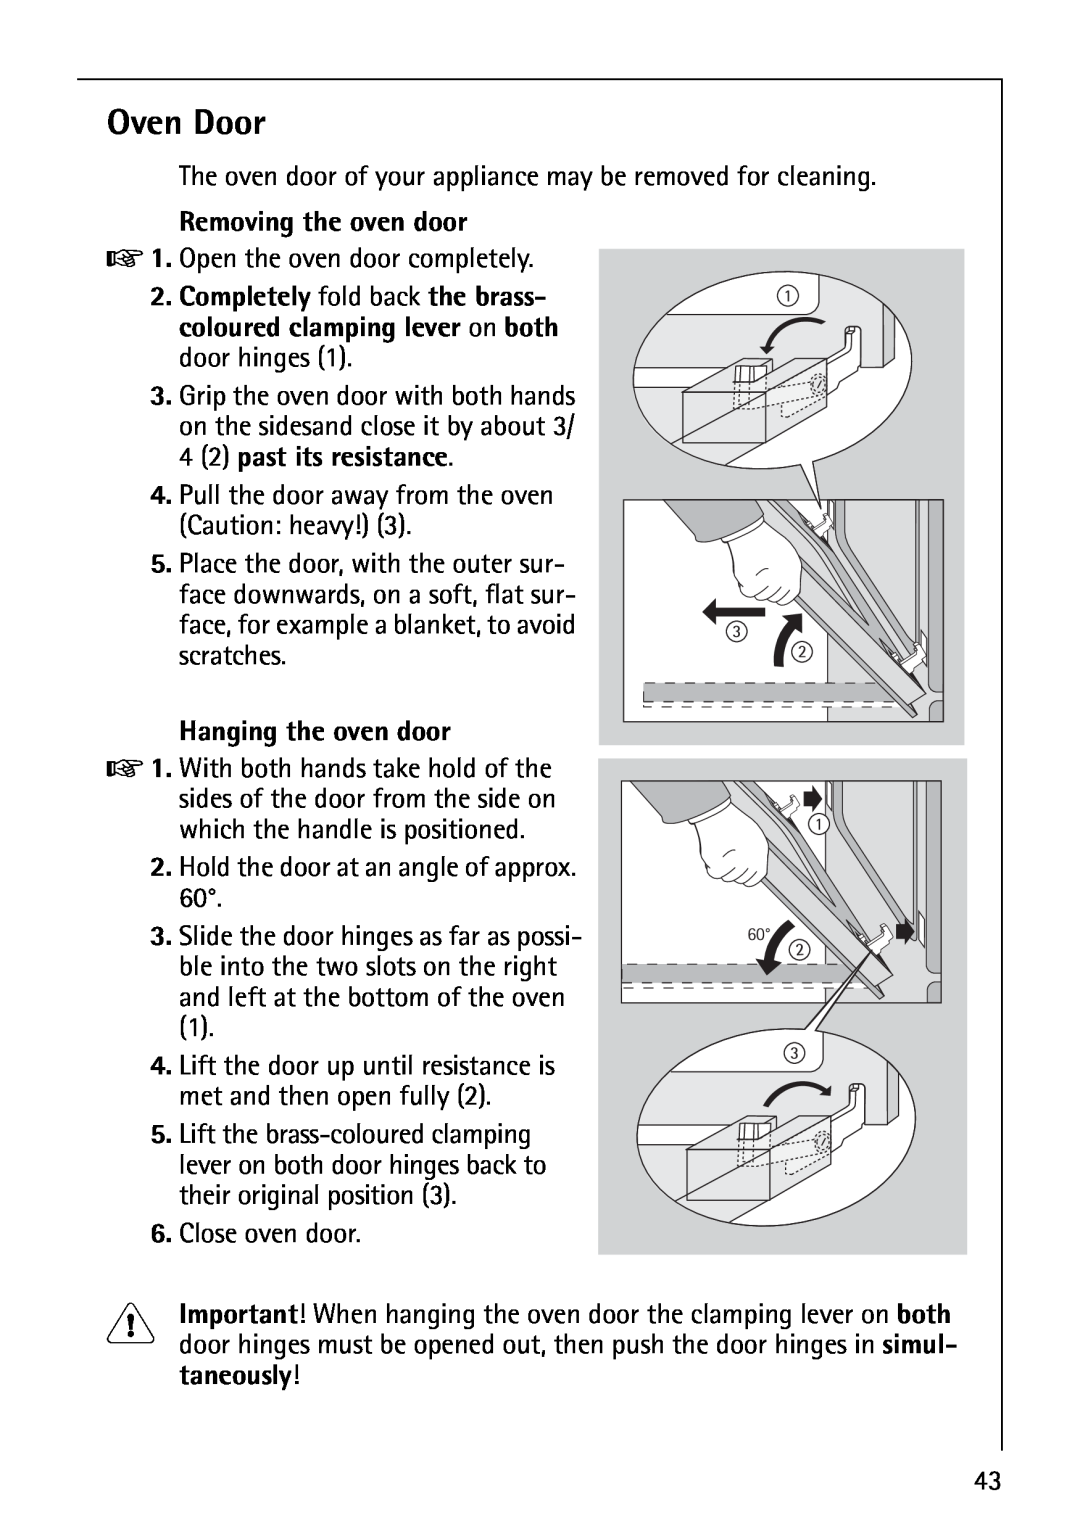 AEG E3100-1 manual Oven Door, Removing the oven door, Hanging the oven door 